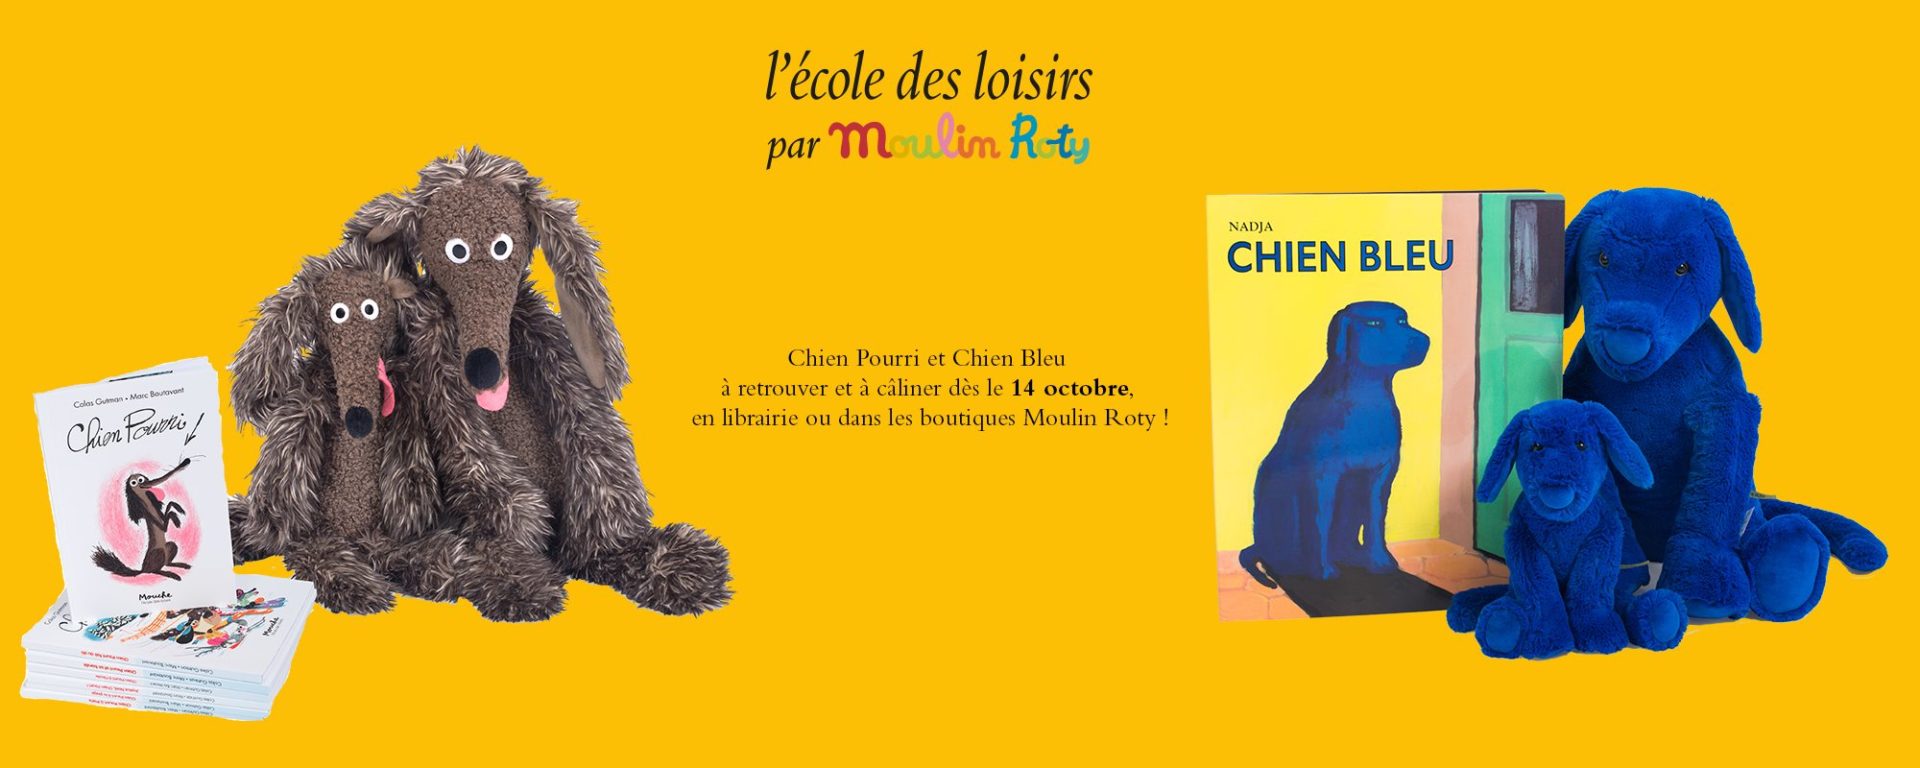 Petit chien bleu - peluche : Nadja - Livres jeux et d'activités